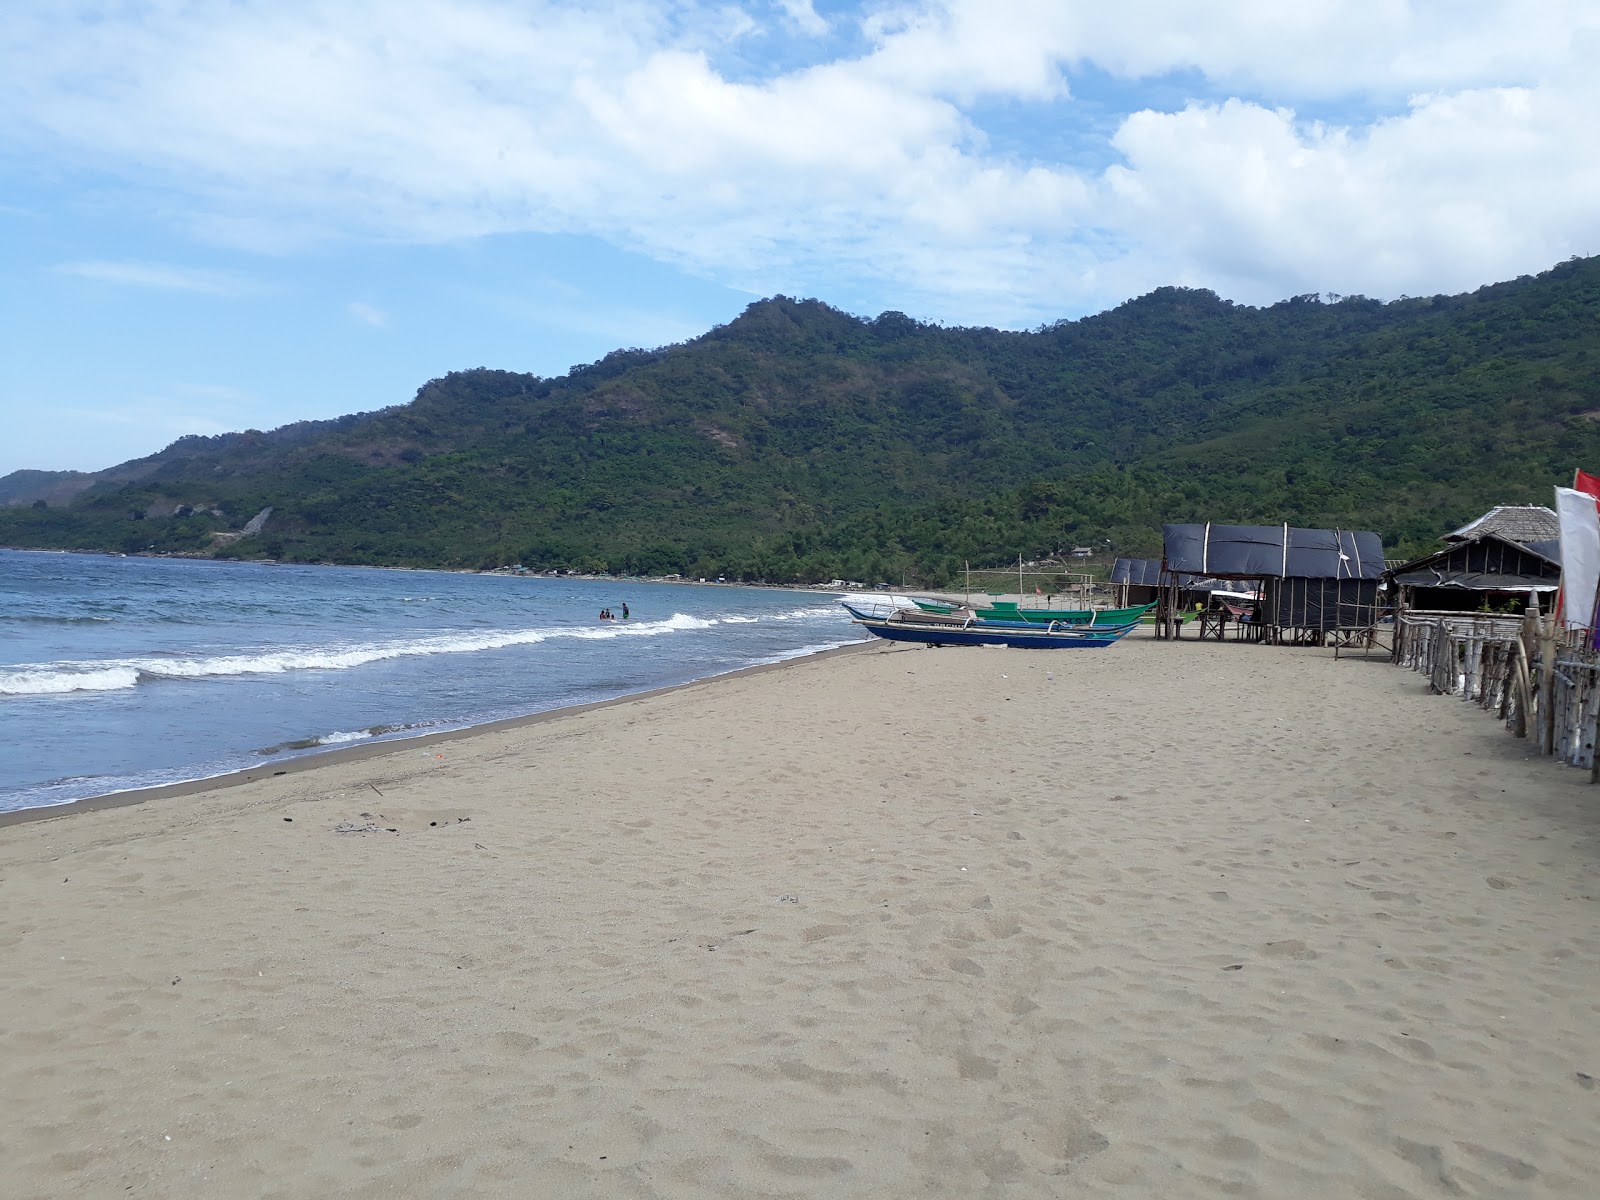 Zdjęcie Patungan beach - popularne miejsce wśród znawców relaksu